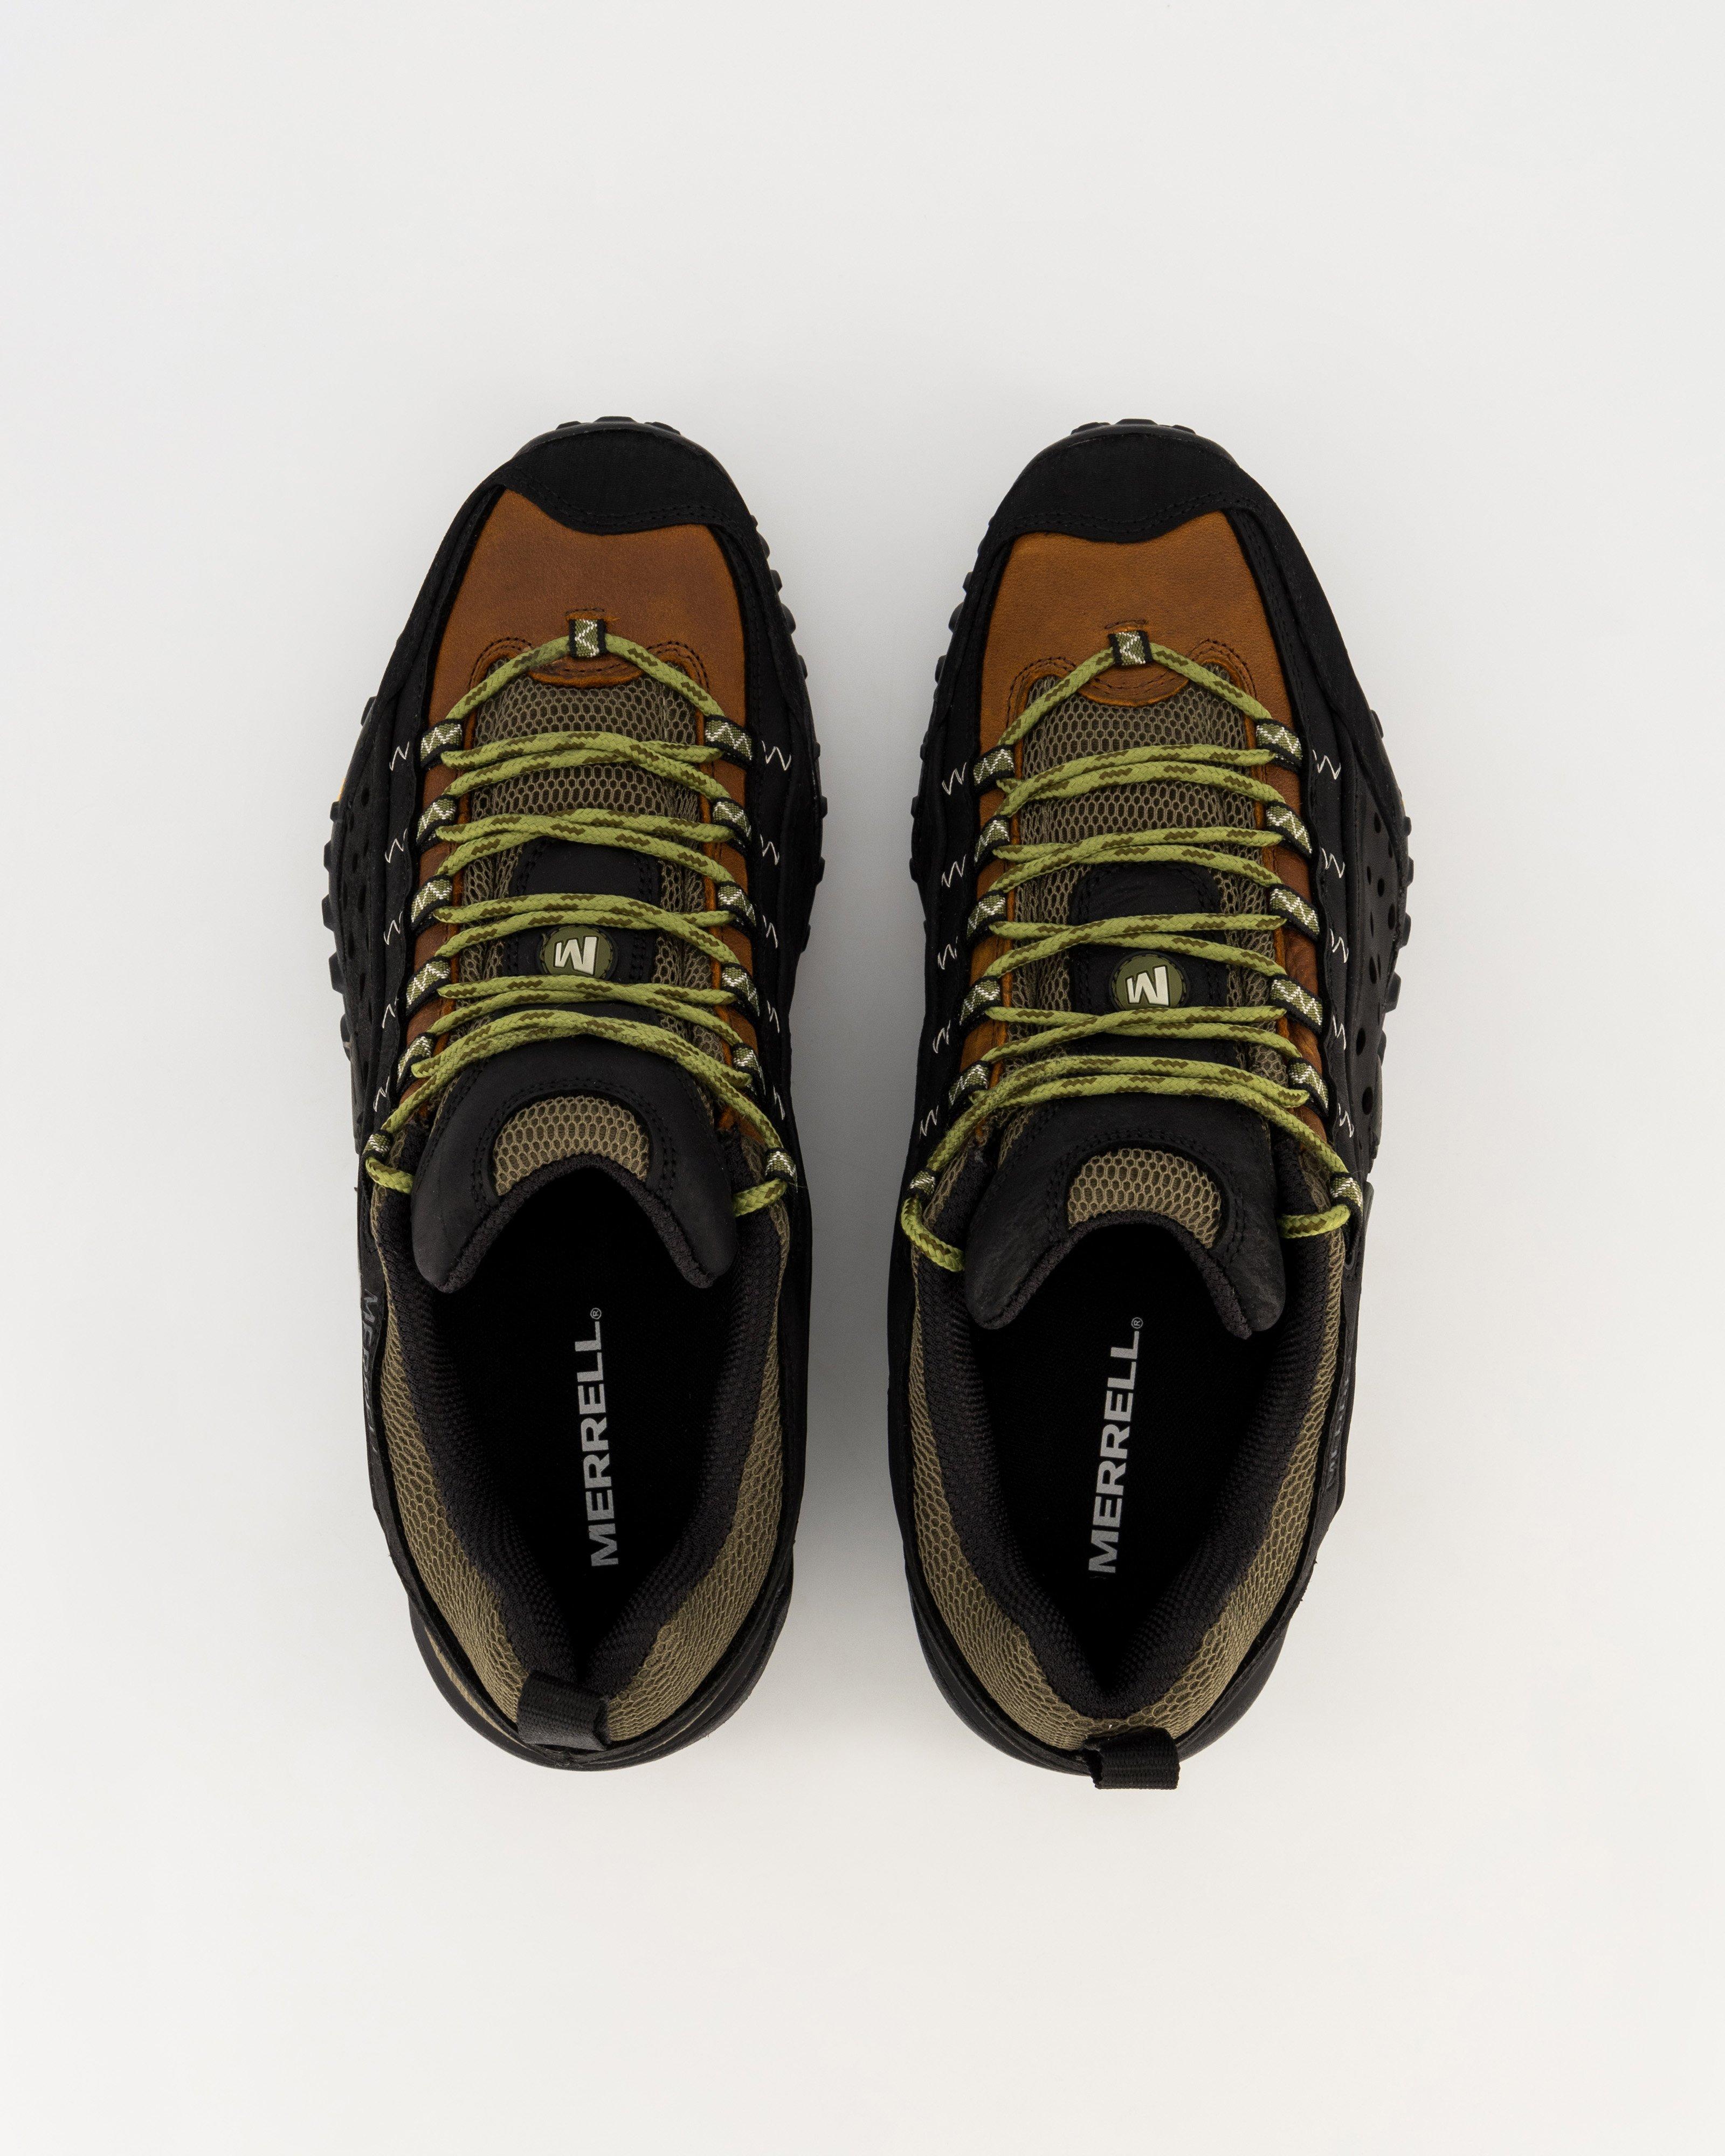 Merrell Men's Intercept Hiking Shoes -  Black